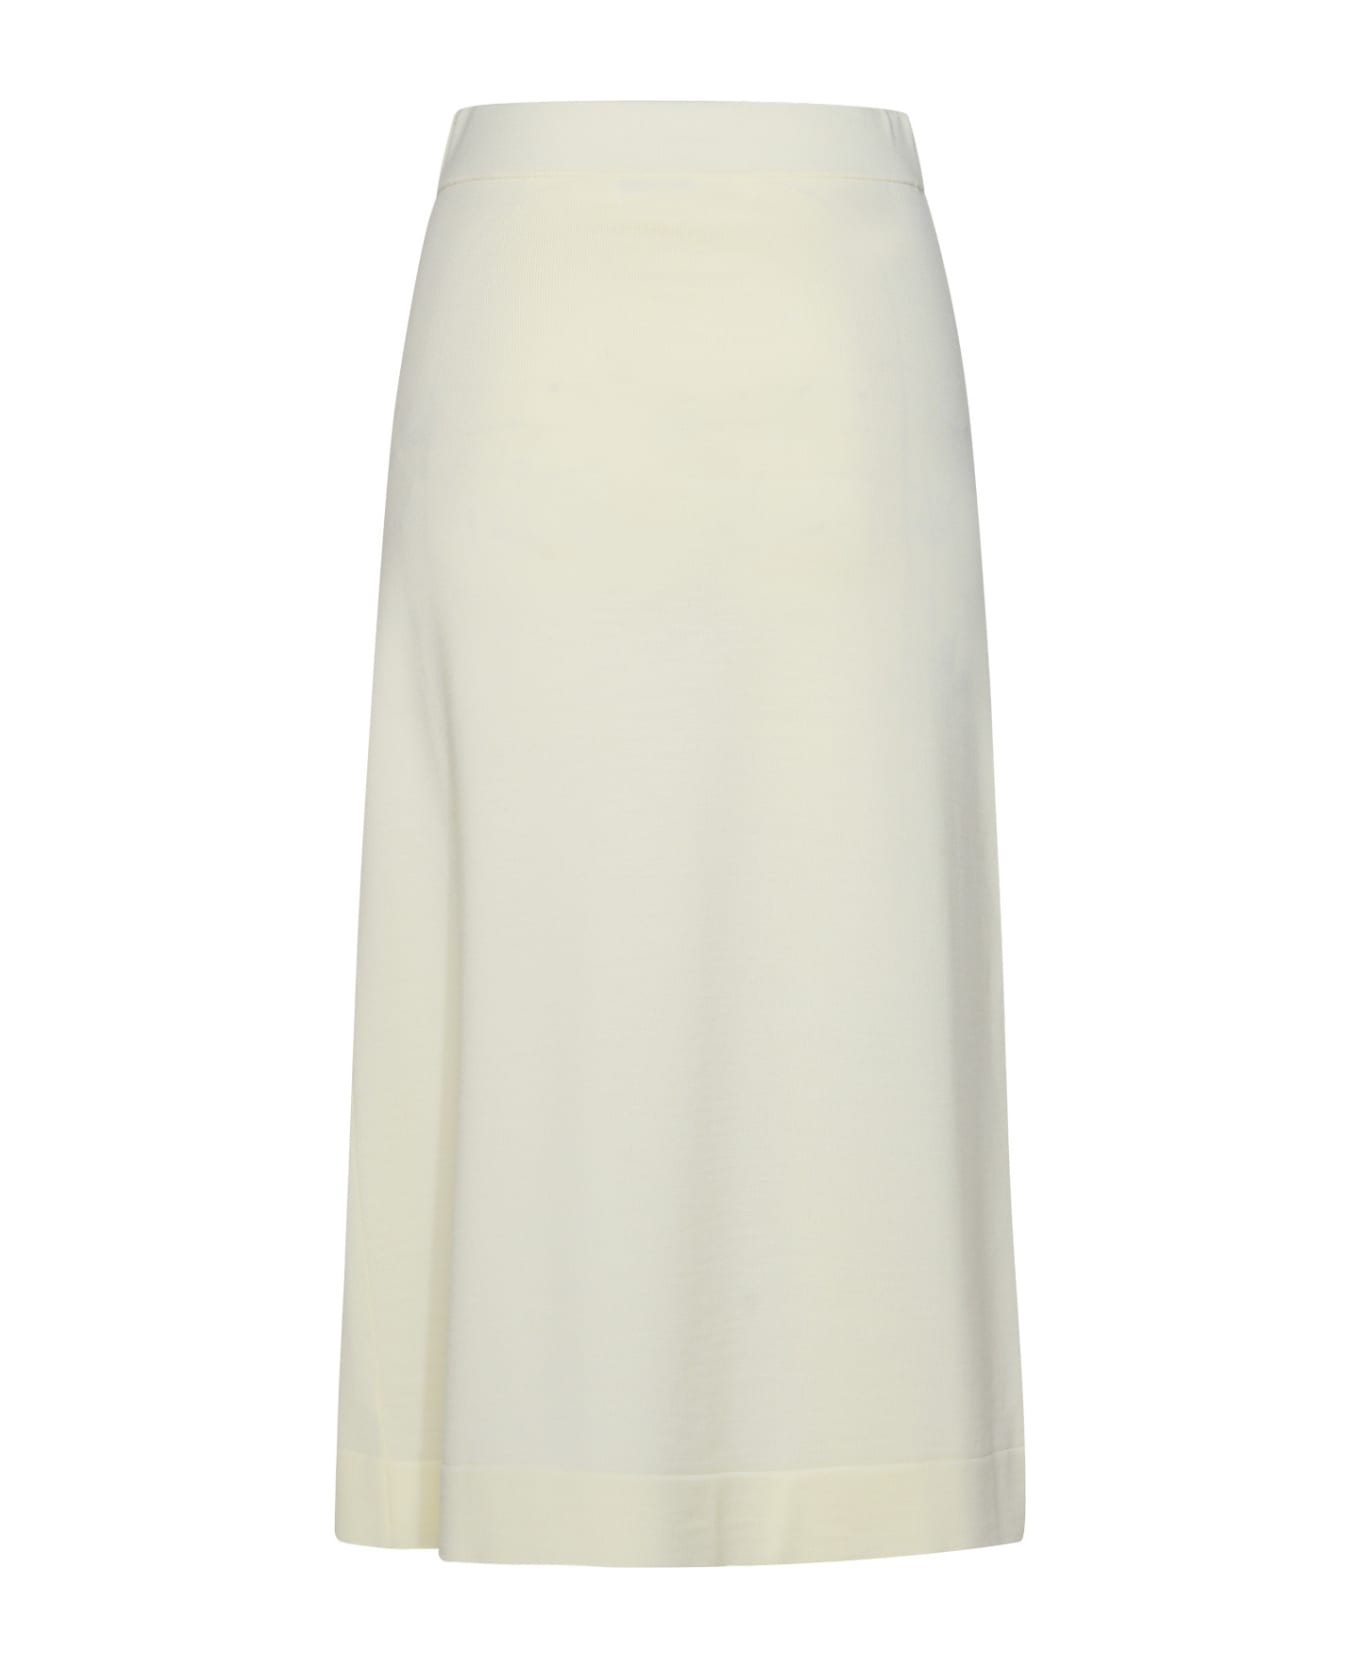 Jil Sander Cream Virgin Wool Skirt - White